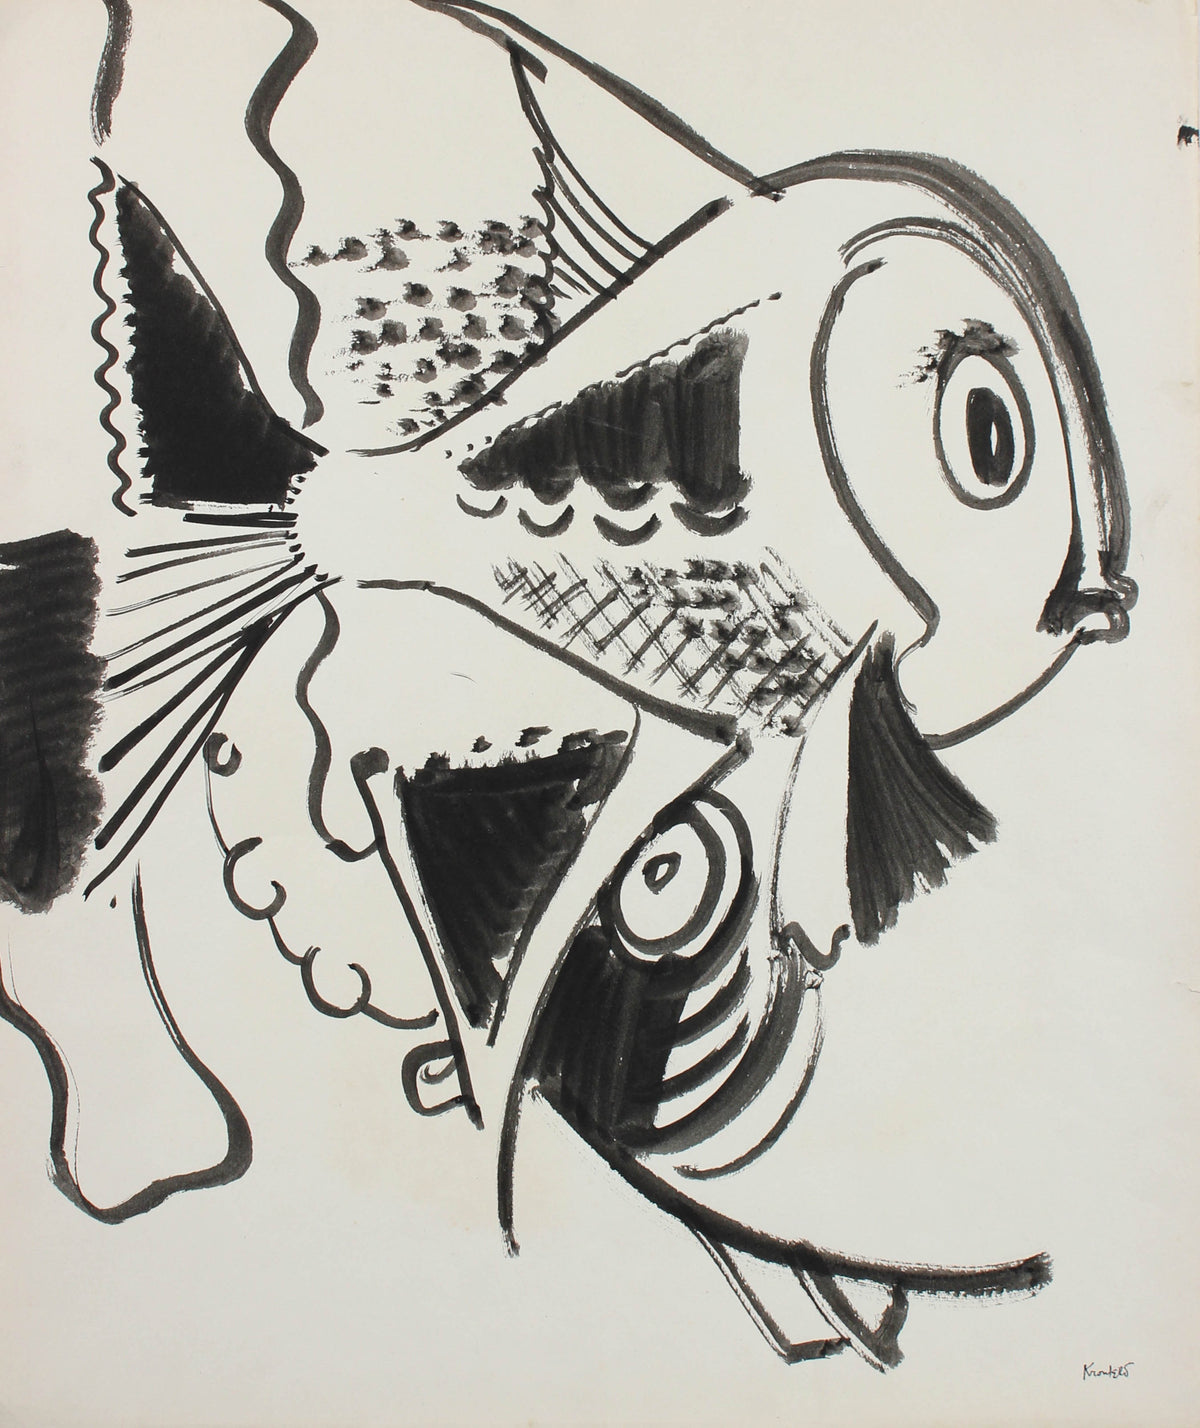 Playful Depiction of Fish &lt;br&gt;1960-80s Ink &lt;br&gt;&lt;br&gt;#99507